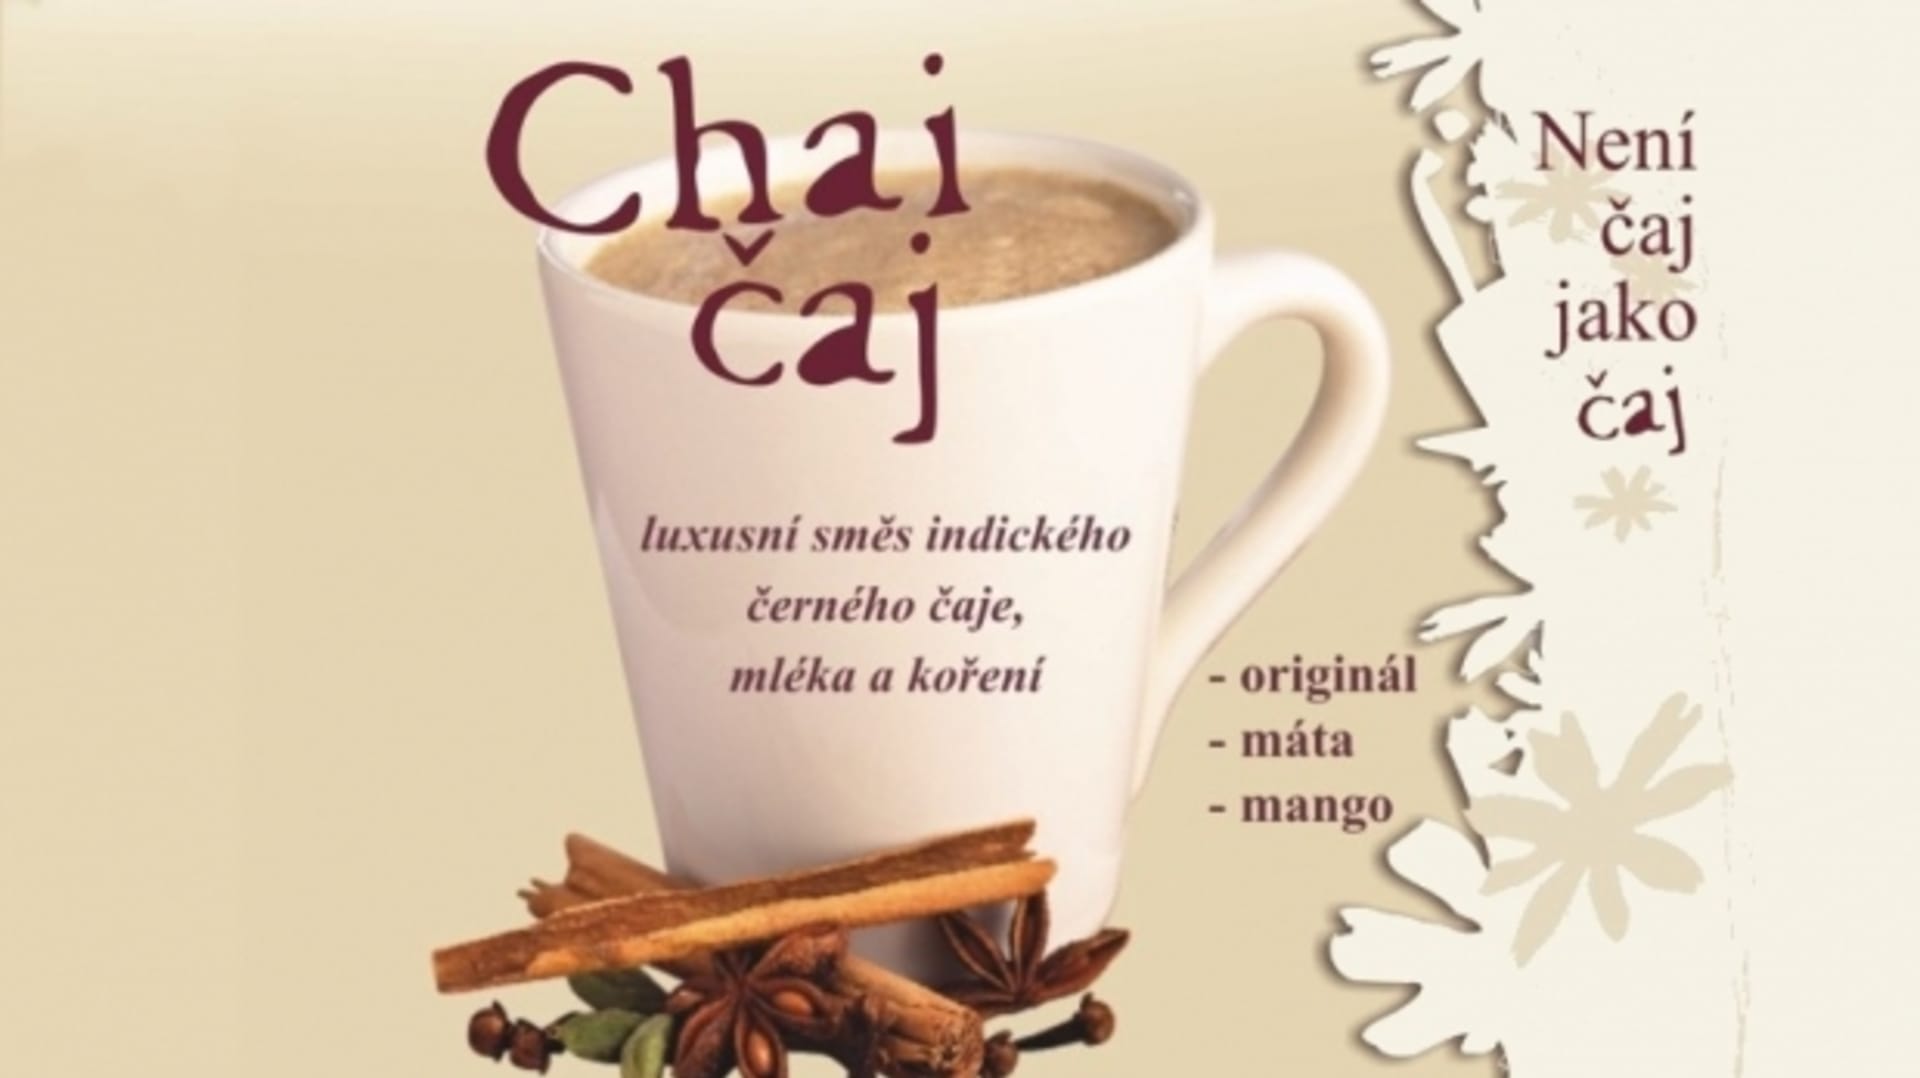 Chai čaj je lahodná směs indického čaje, mléka a koření. FOTO: JPLUS s.r.o.